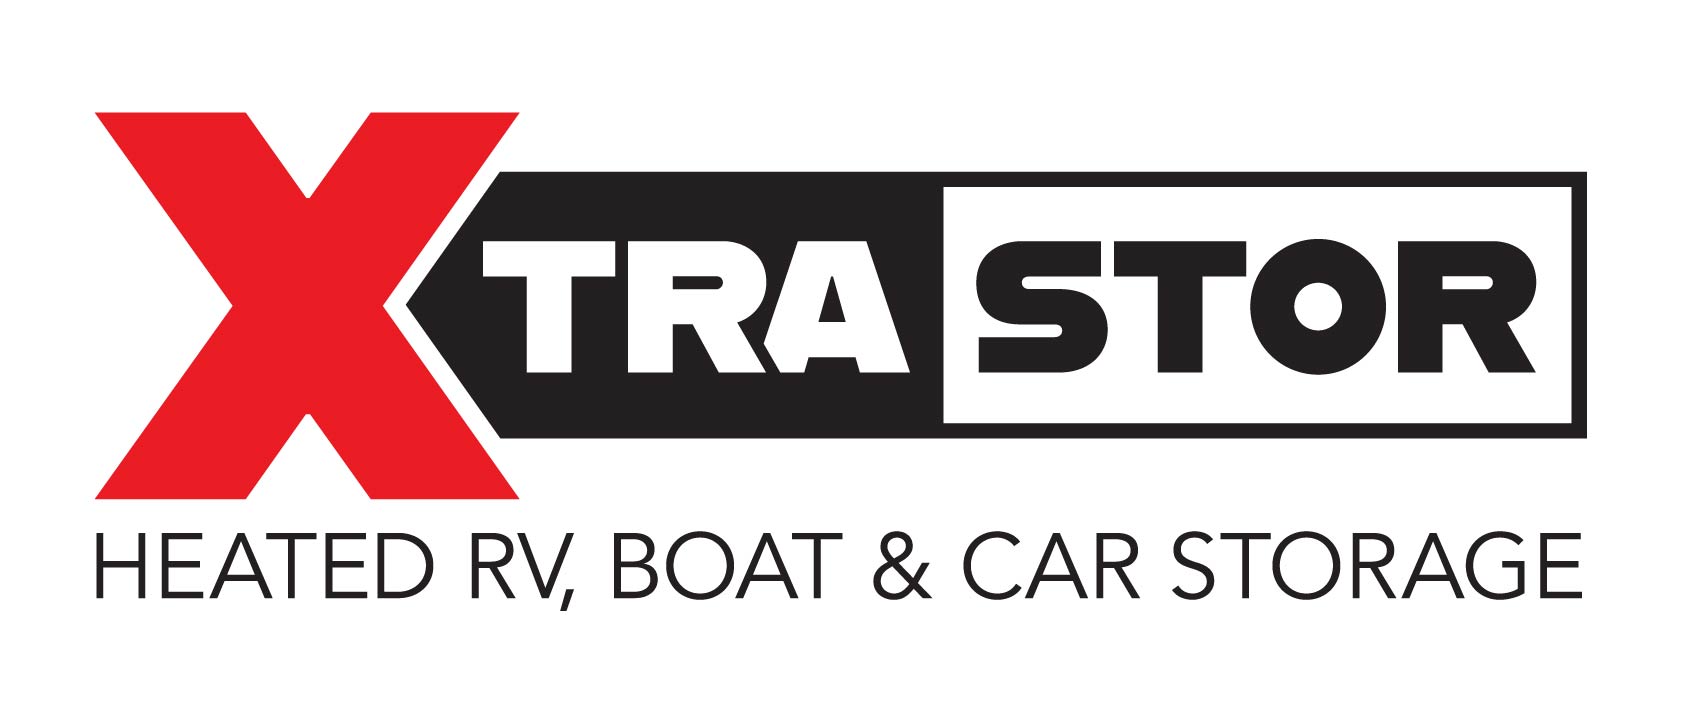 Xtra Stor Logo